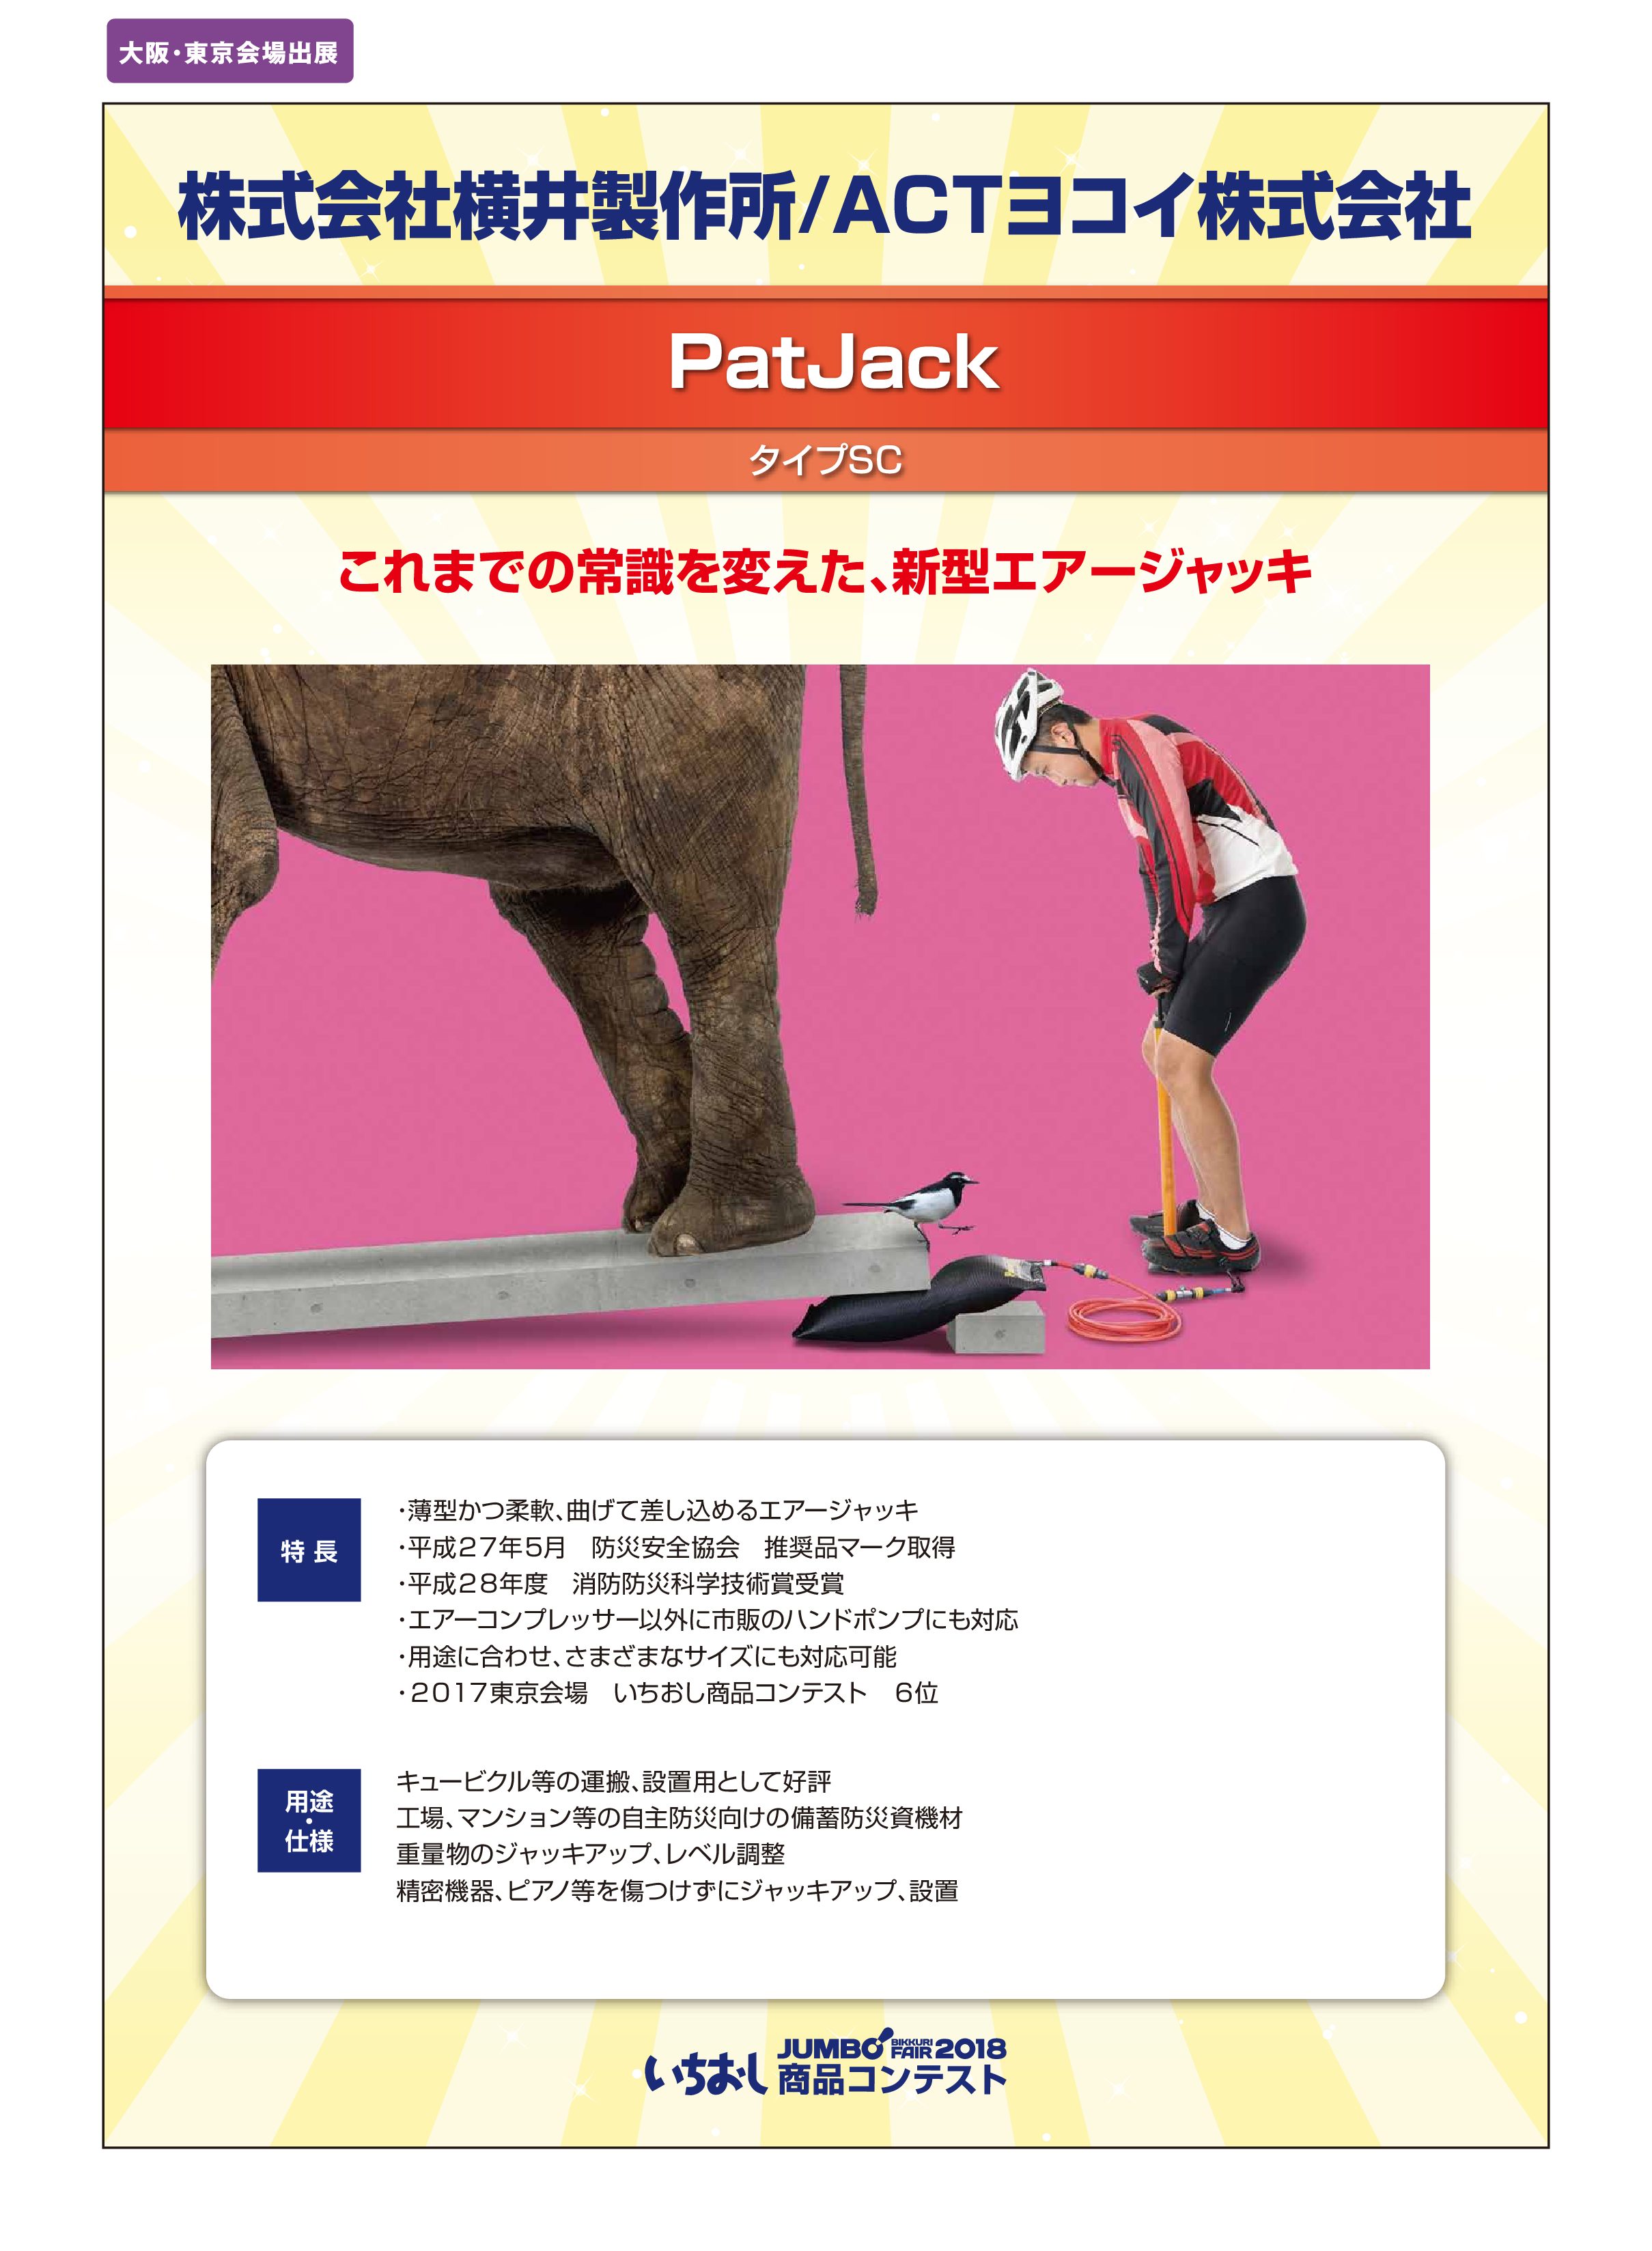 「PatJack」株式会社横井製作所/ACTヨコイ株式会社の画像